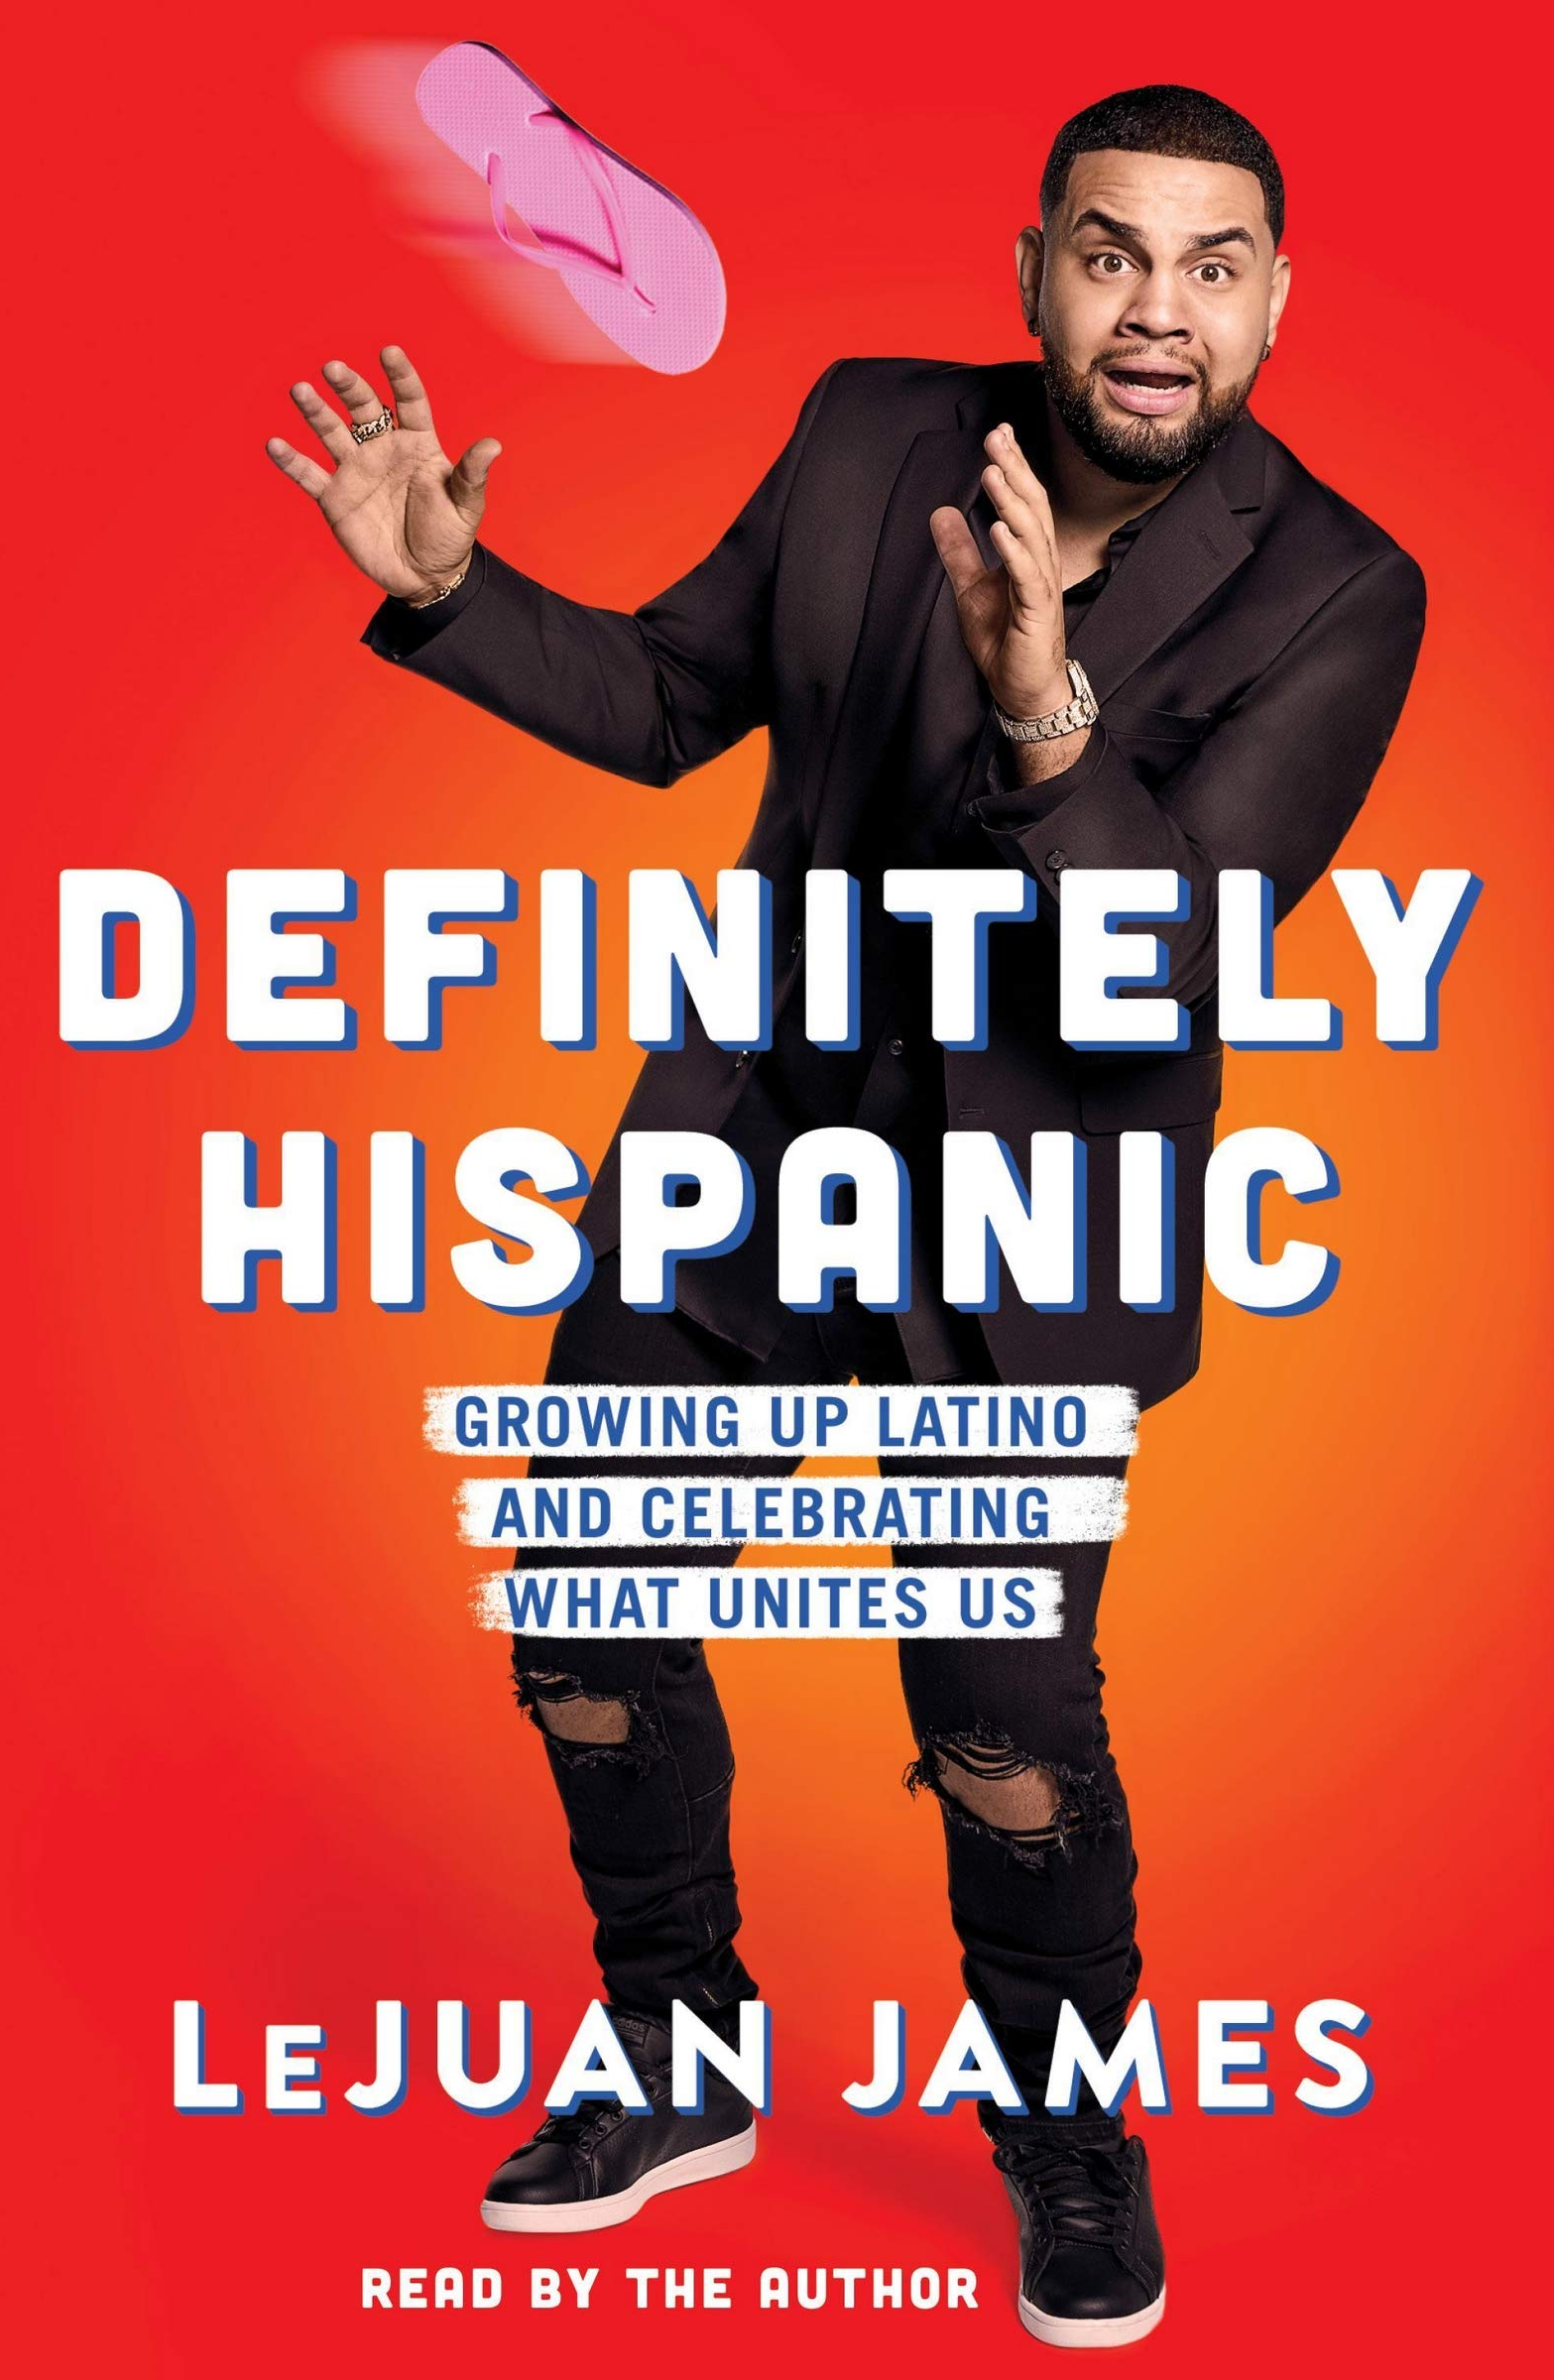 Image for "Definitely Hispanic"